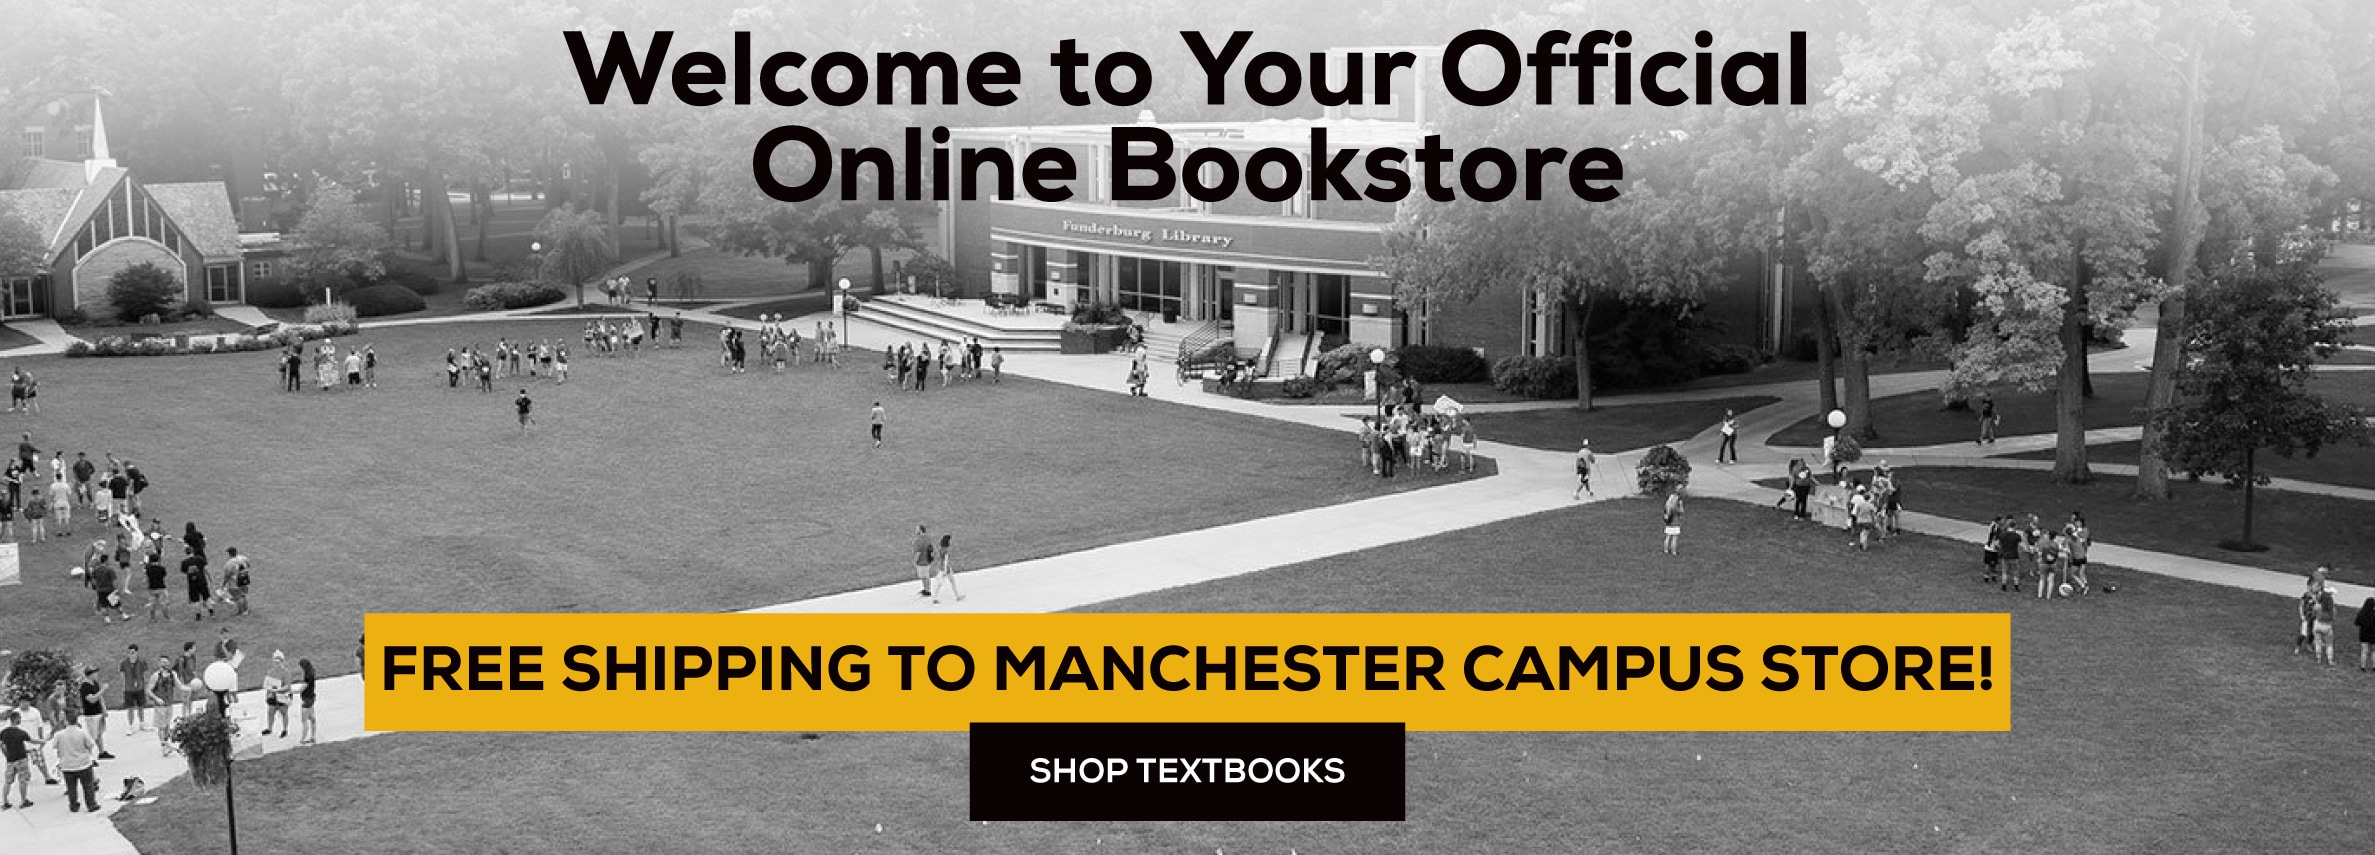 欢迎来到您的官方网上书店